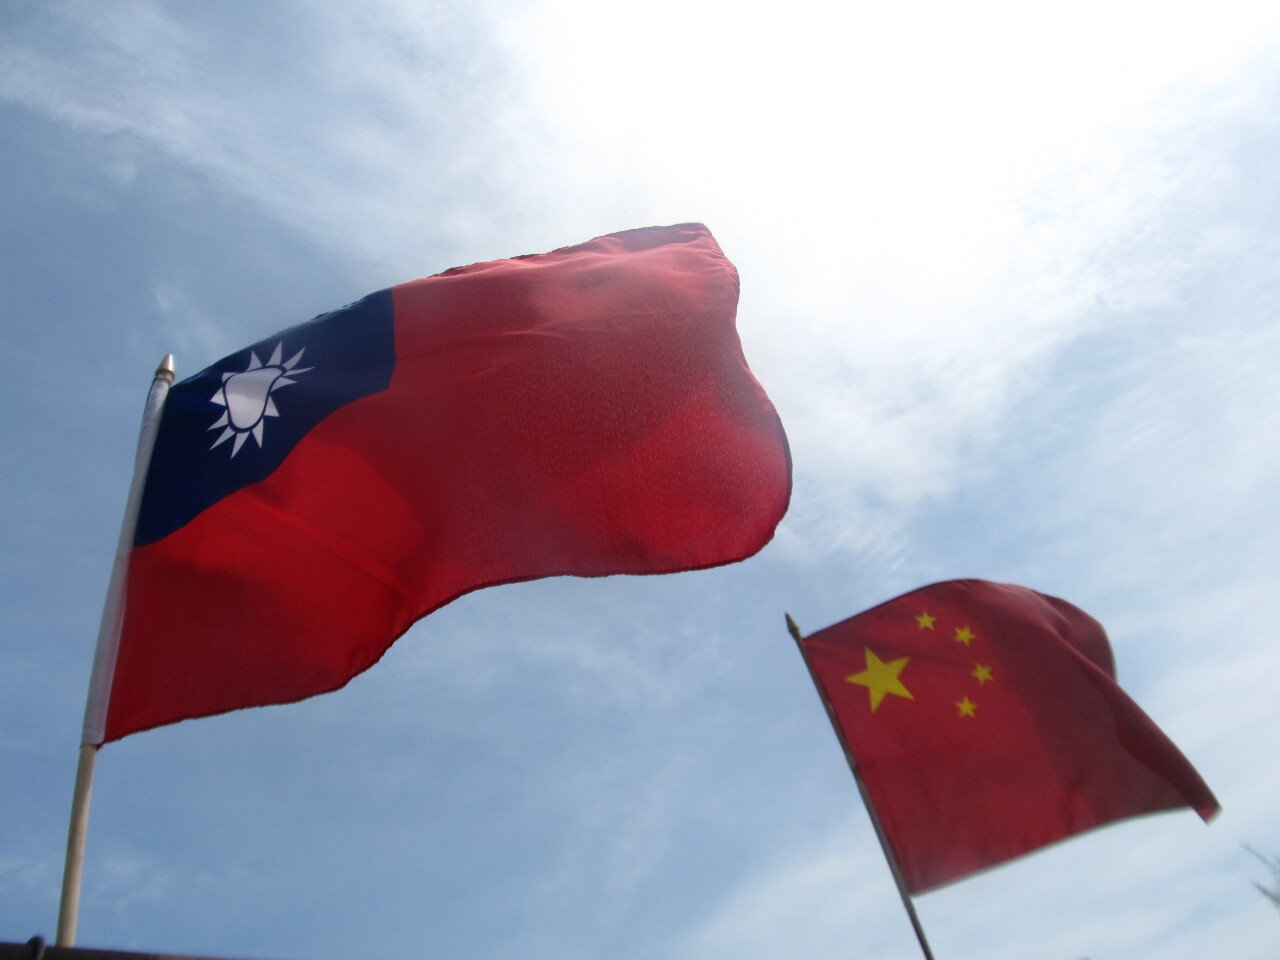 Quand le PCC pensait que Taiwan devait être indépendant : retour sur la position de la Chine sur Taiwan d'après un ancien diplomate néérlandais